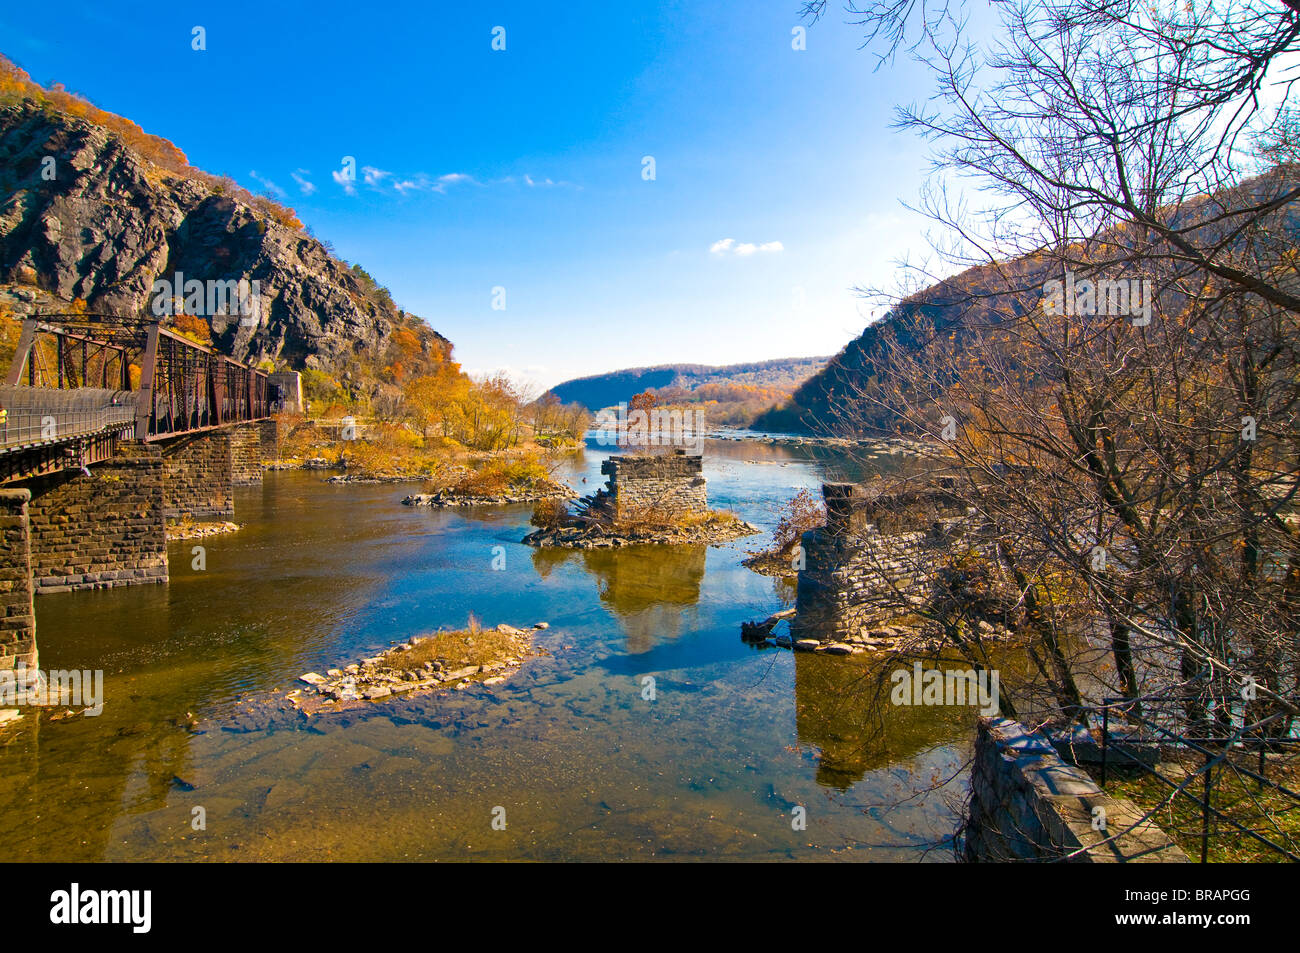 La confluencia de los ríos Potomac y Shenandoah de Harpers Ferry, Virginia Occidental, Estados Unidos de América, América del Norte Foto de stock